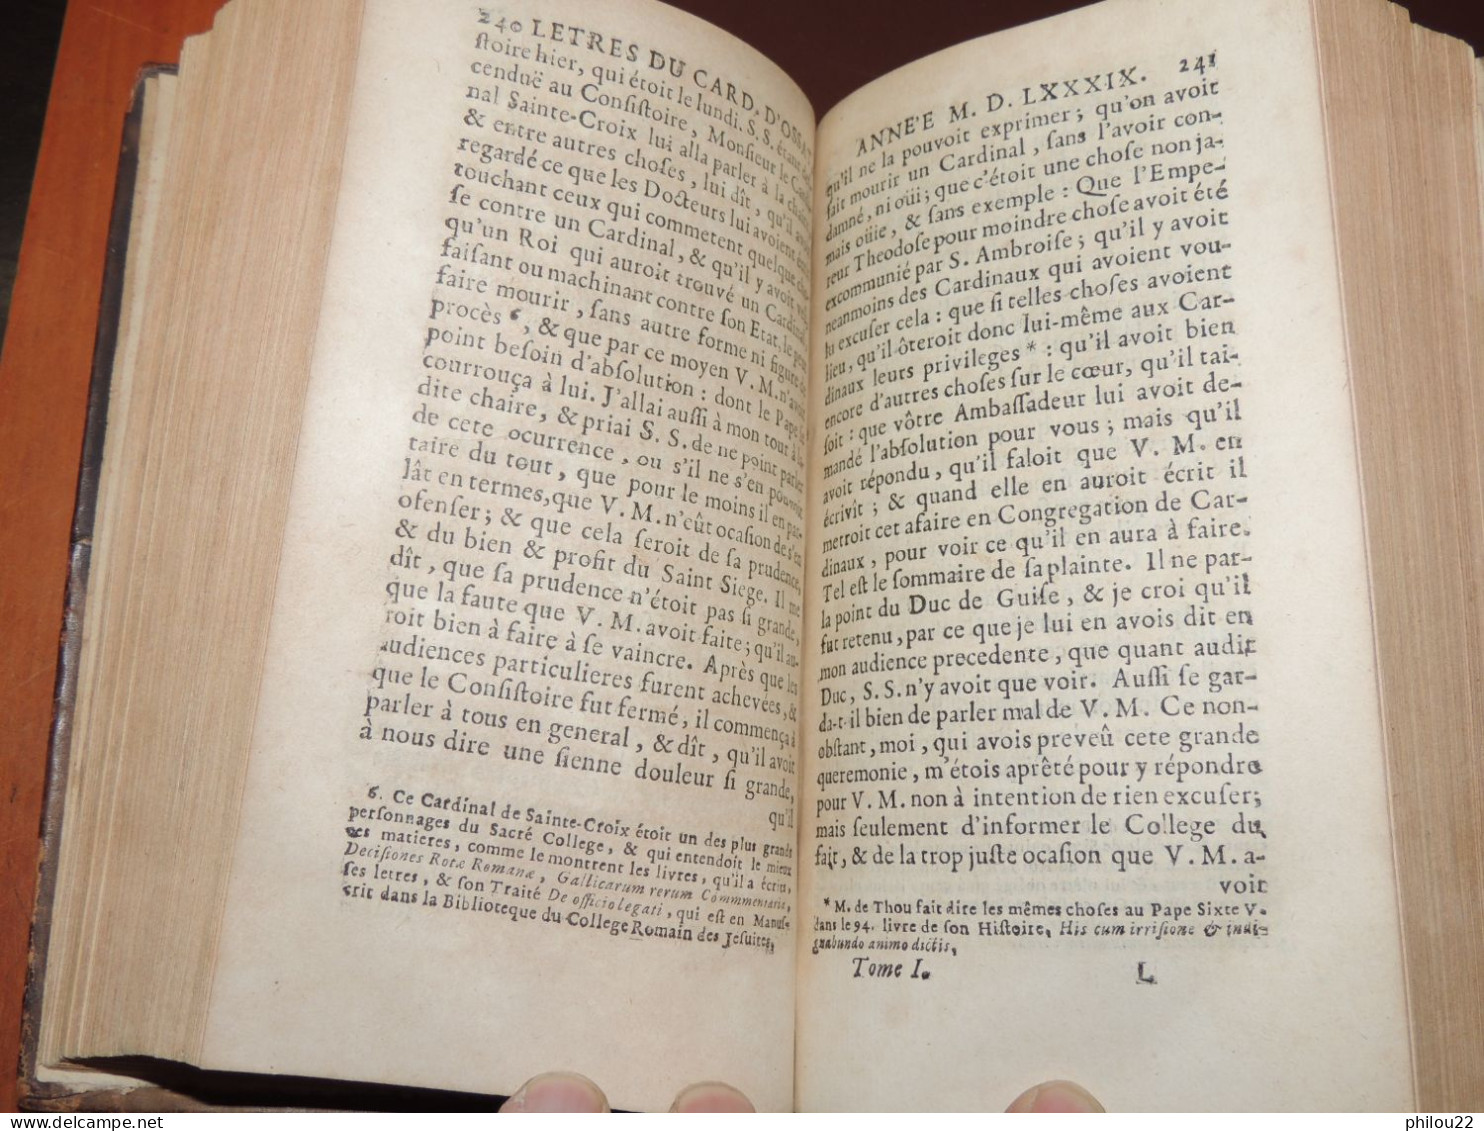 Lettres du cardinal D'Ossat (Evêque Rennes - Bayeux) Diplomatie - 5/5 vol. 1714